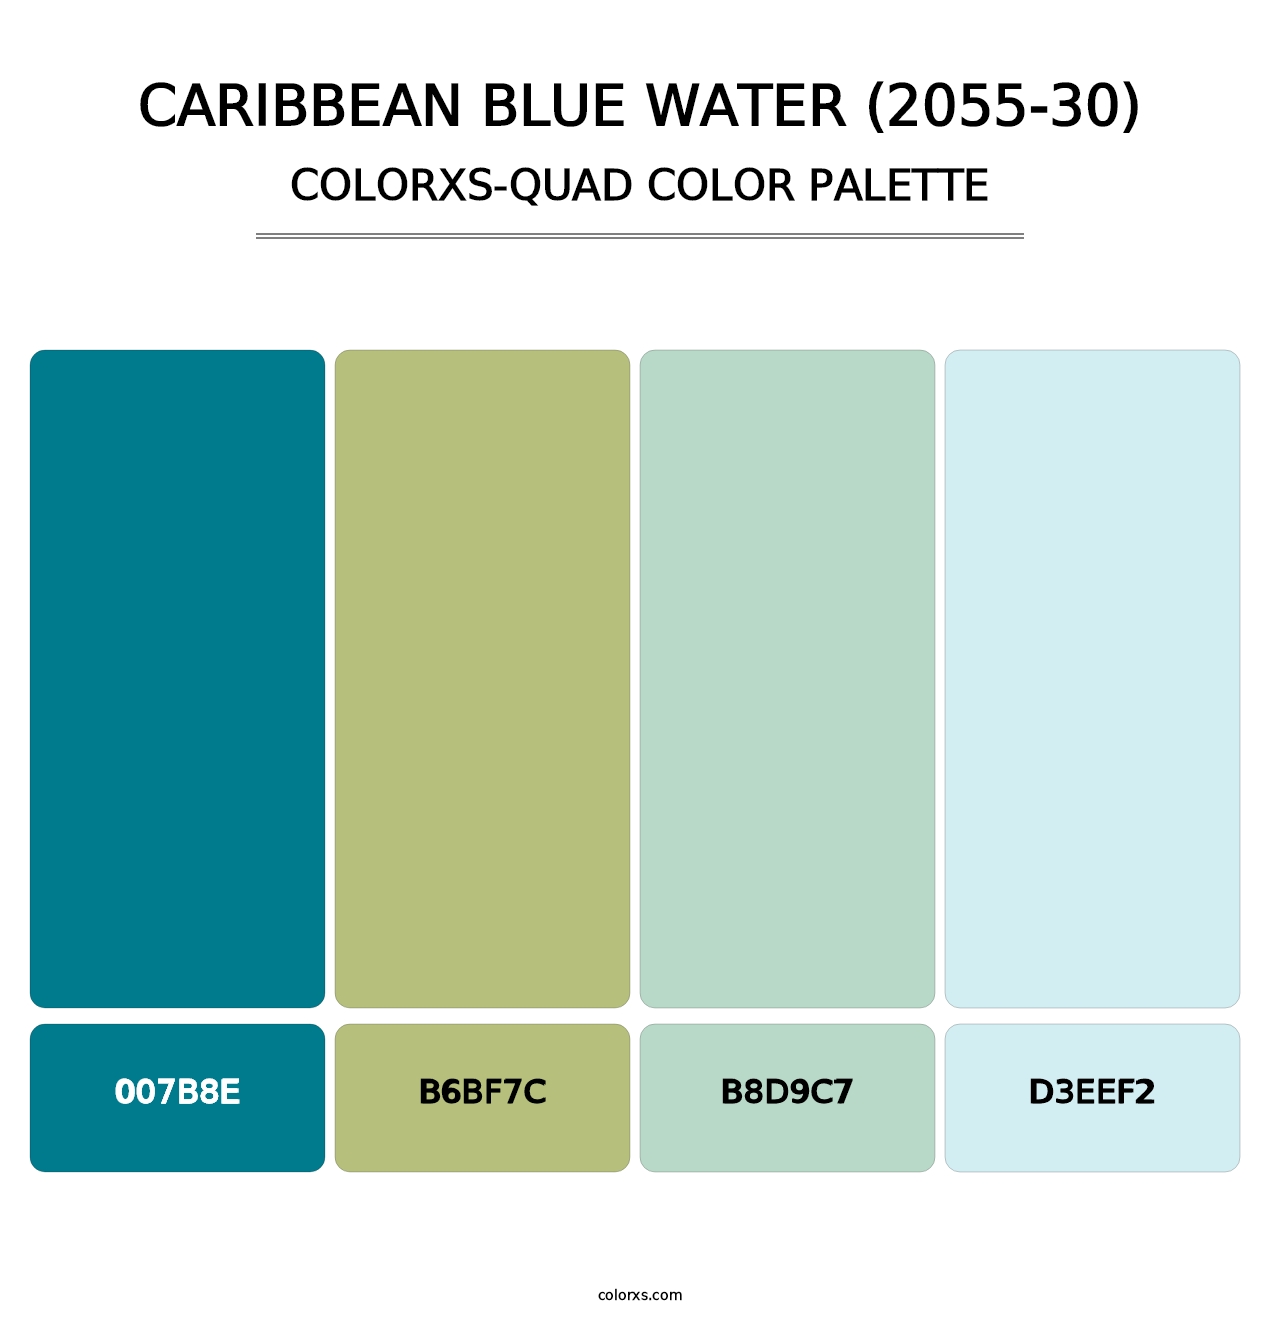 Caribbean Blue Water (2055-30) - Colorxs Quad Palette